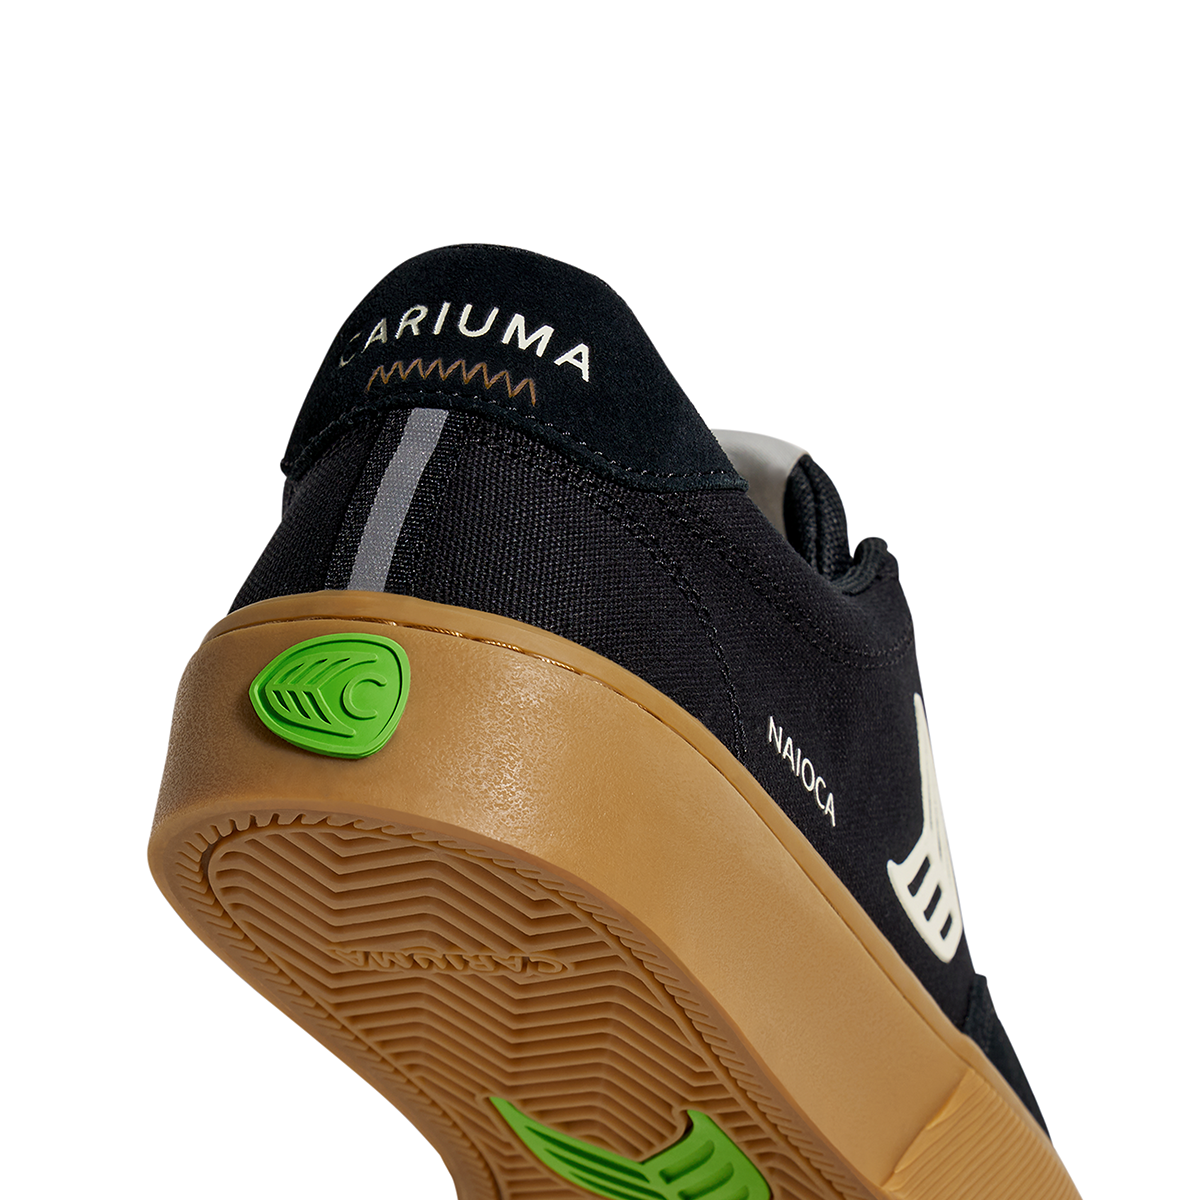 NAIOCA Pro Shoes | Cariuma